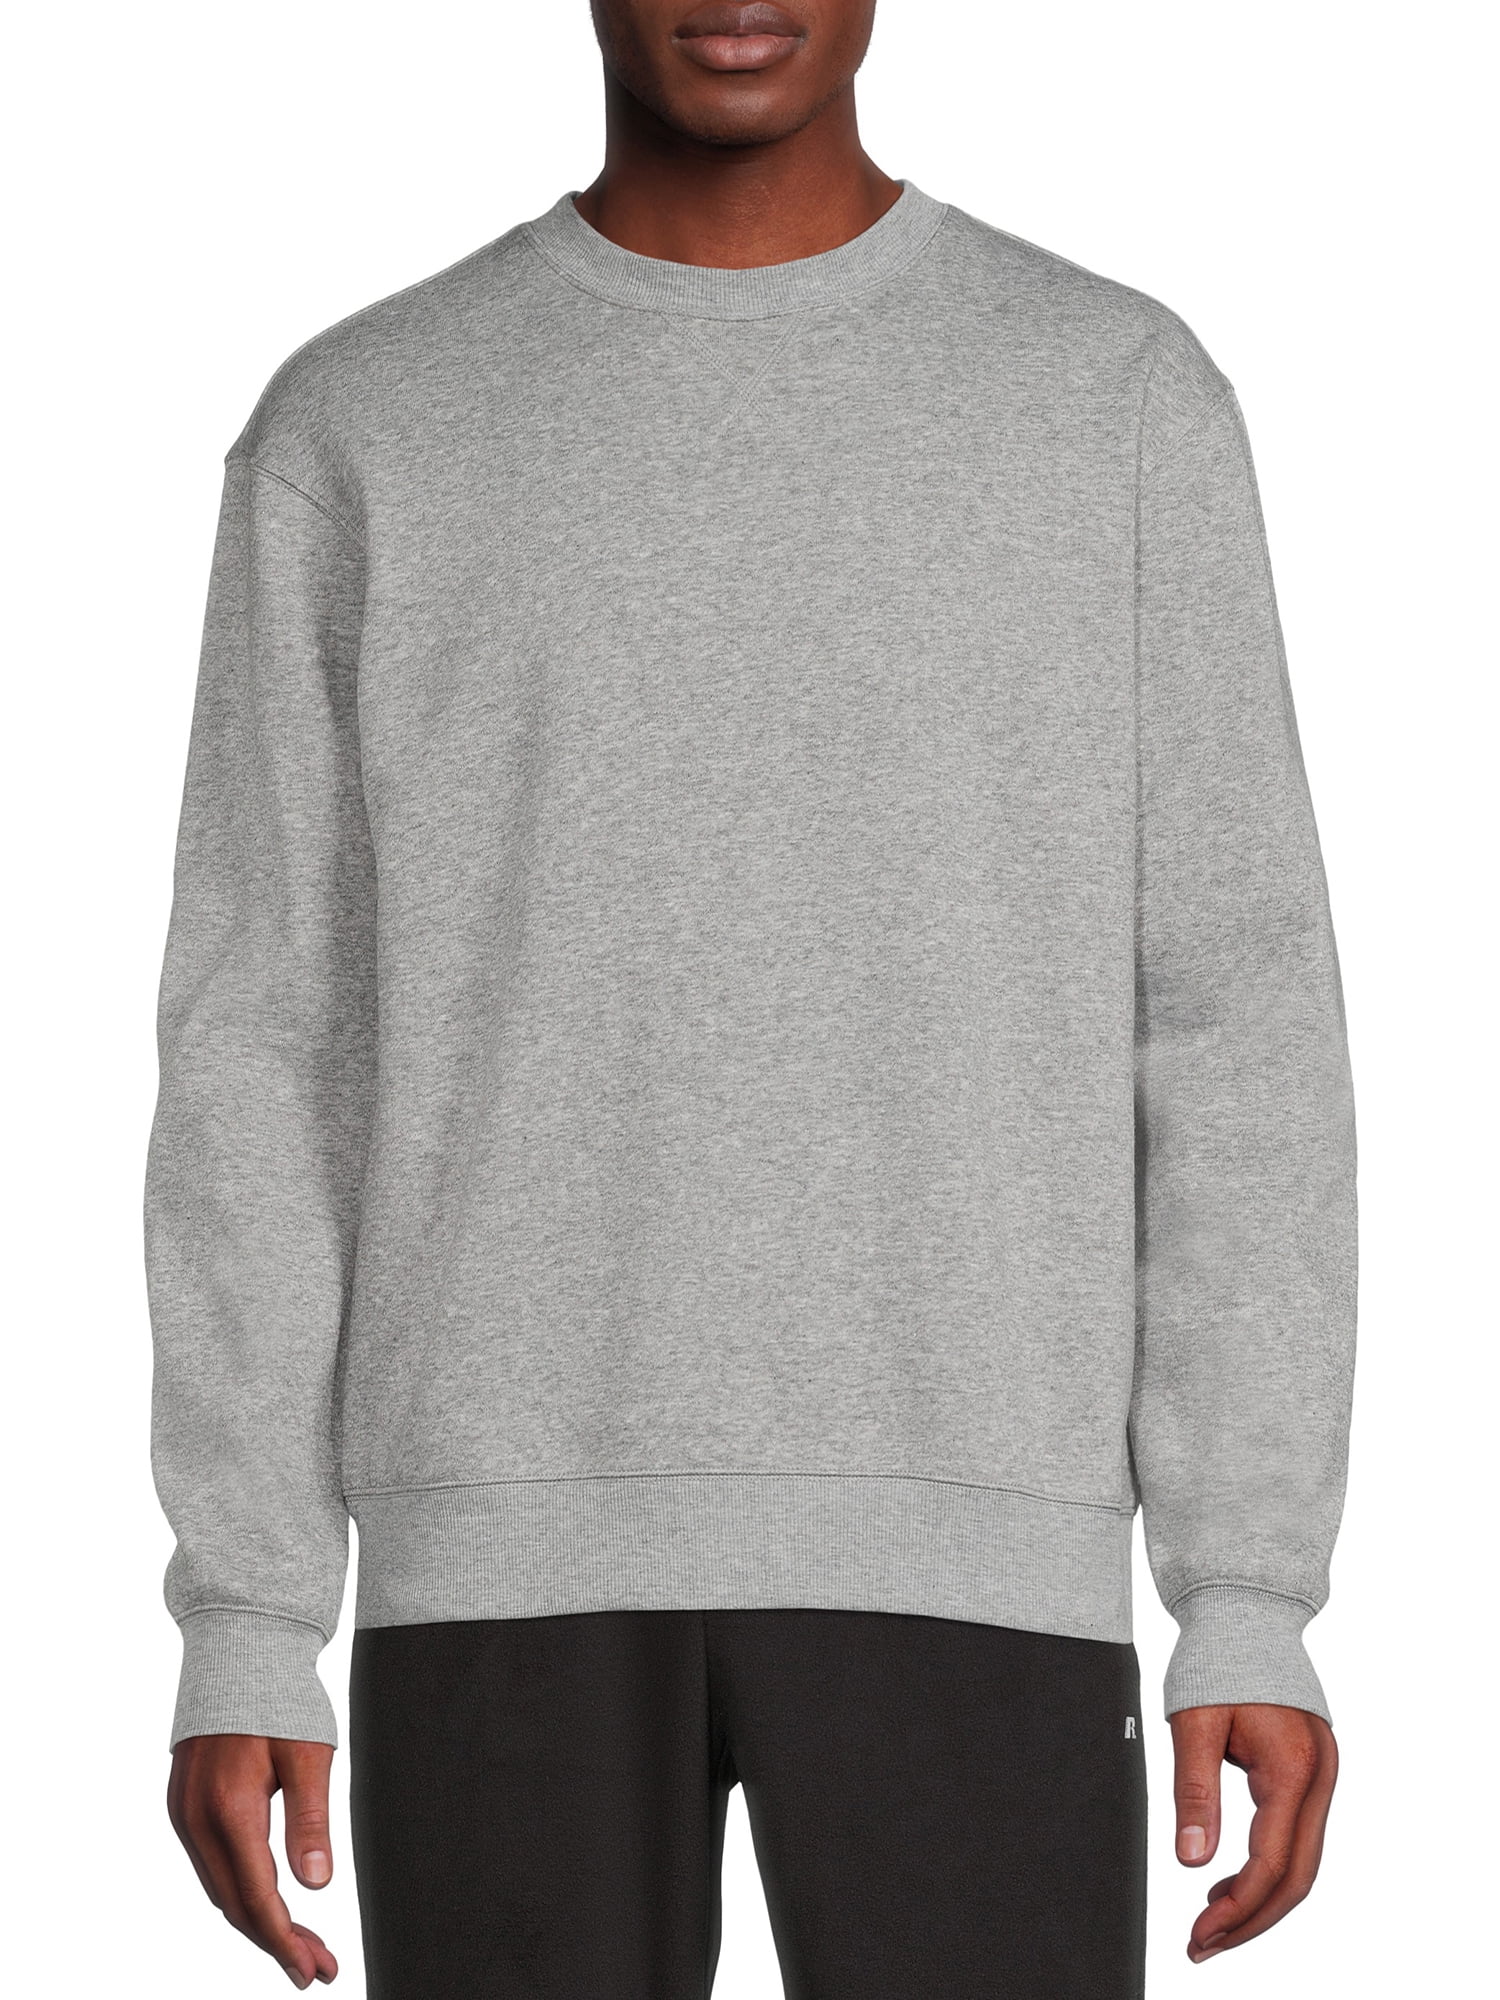 Russell Men's and Big Men's Fleece Crewneck Sweatshirt, Sizes up to 3XL ...